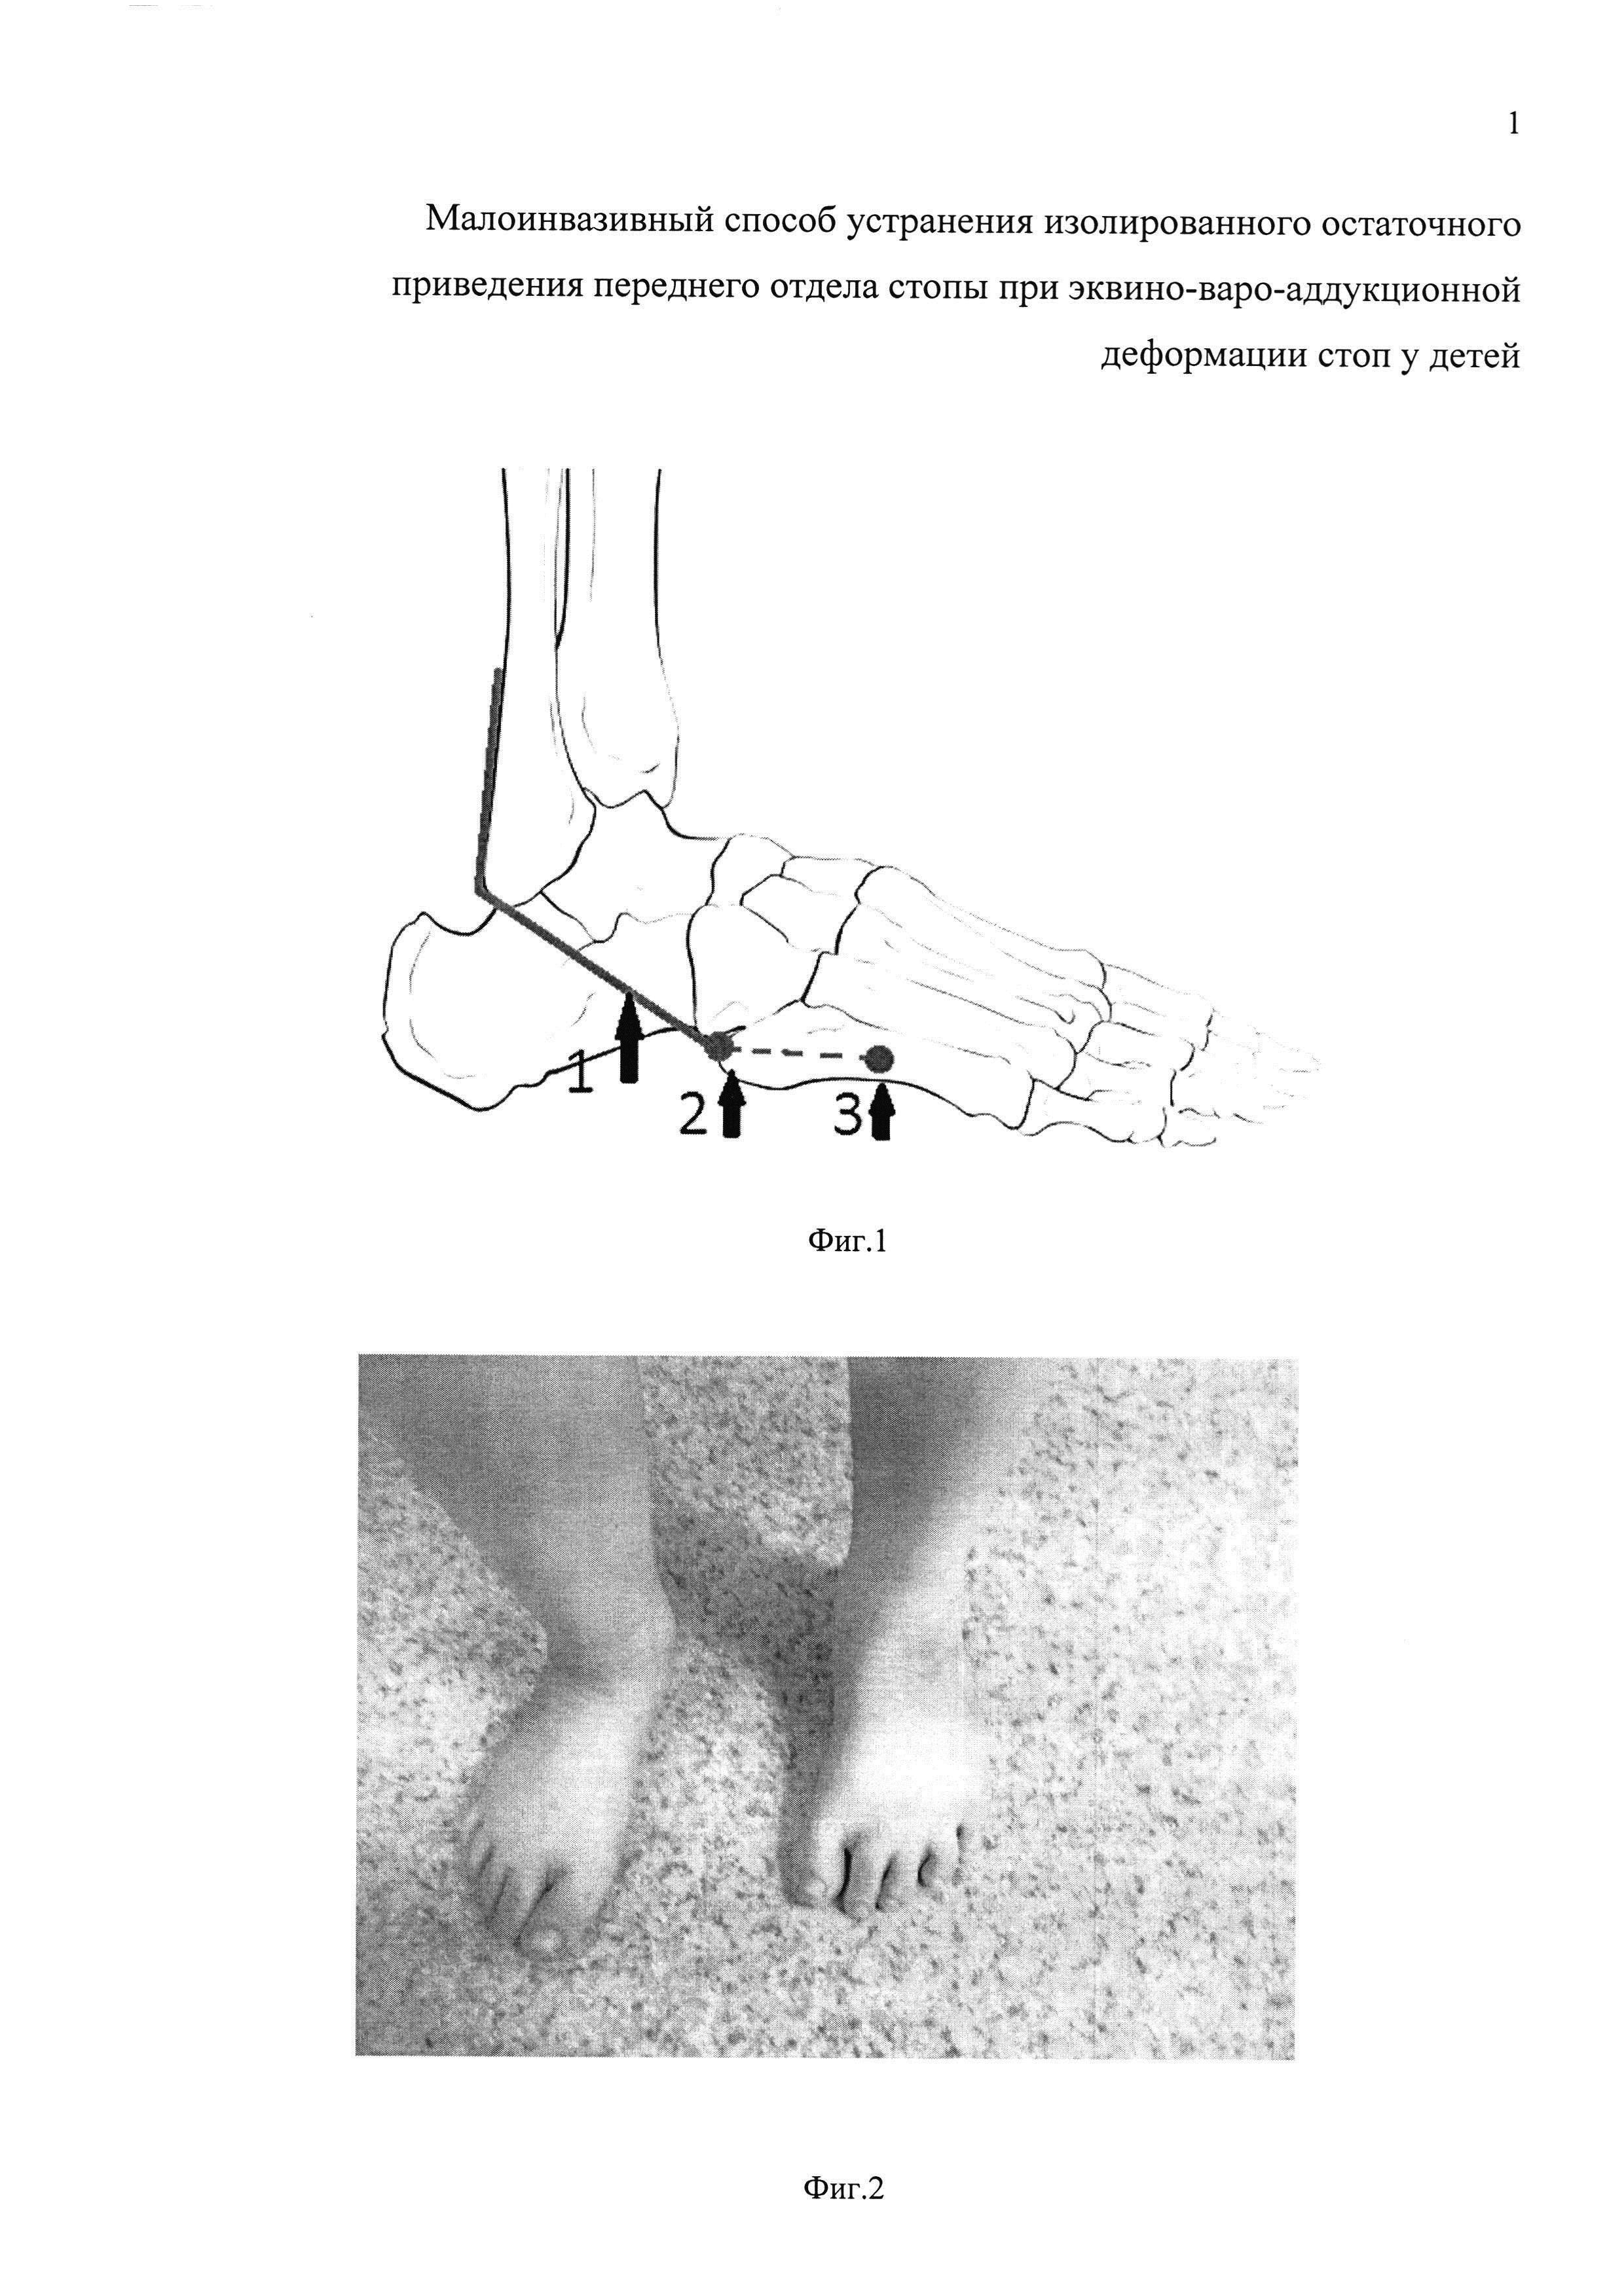 Малоинвазивный способ устранения изолированного остаточного приведения переднего отдела стопы при эквино-варо-аддукционной деформации стоп у детей